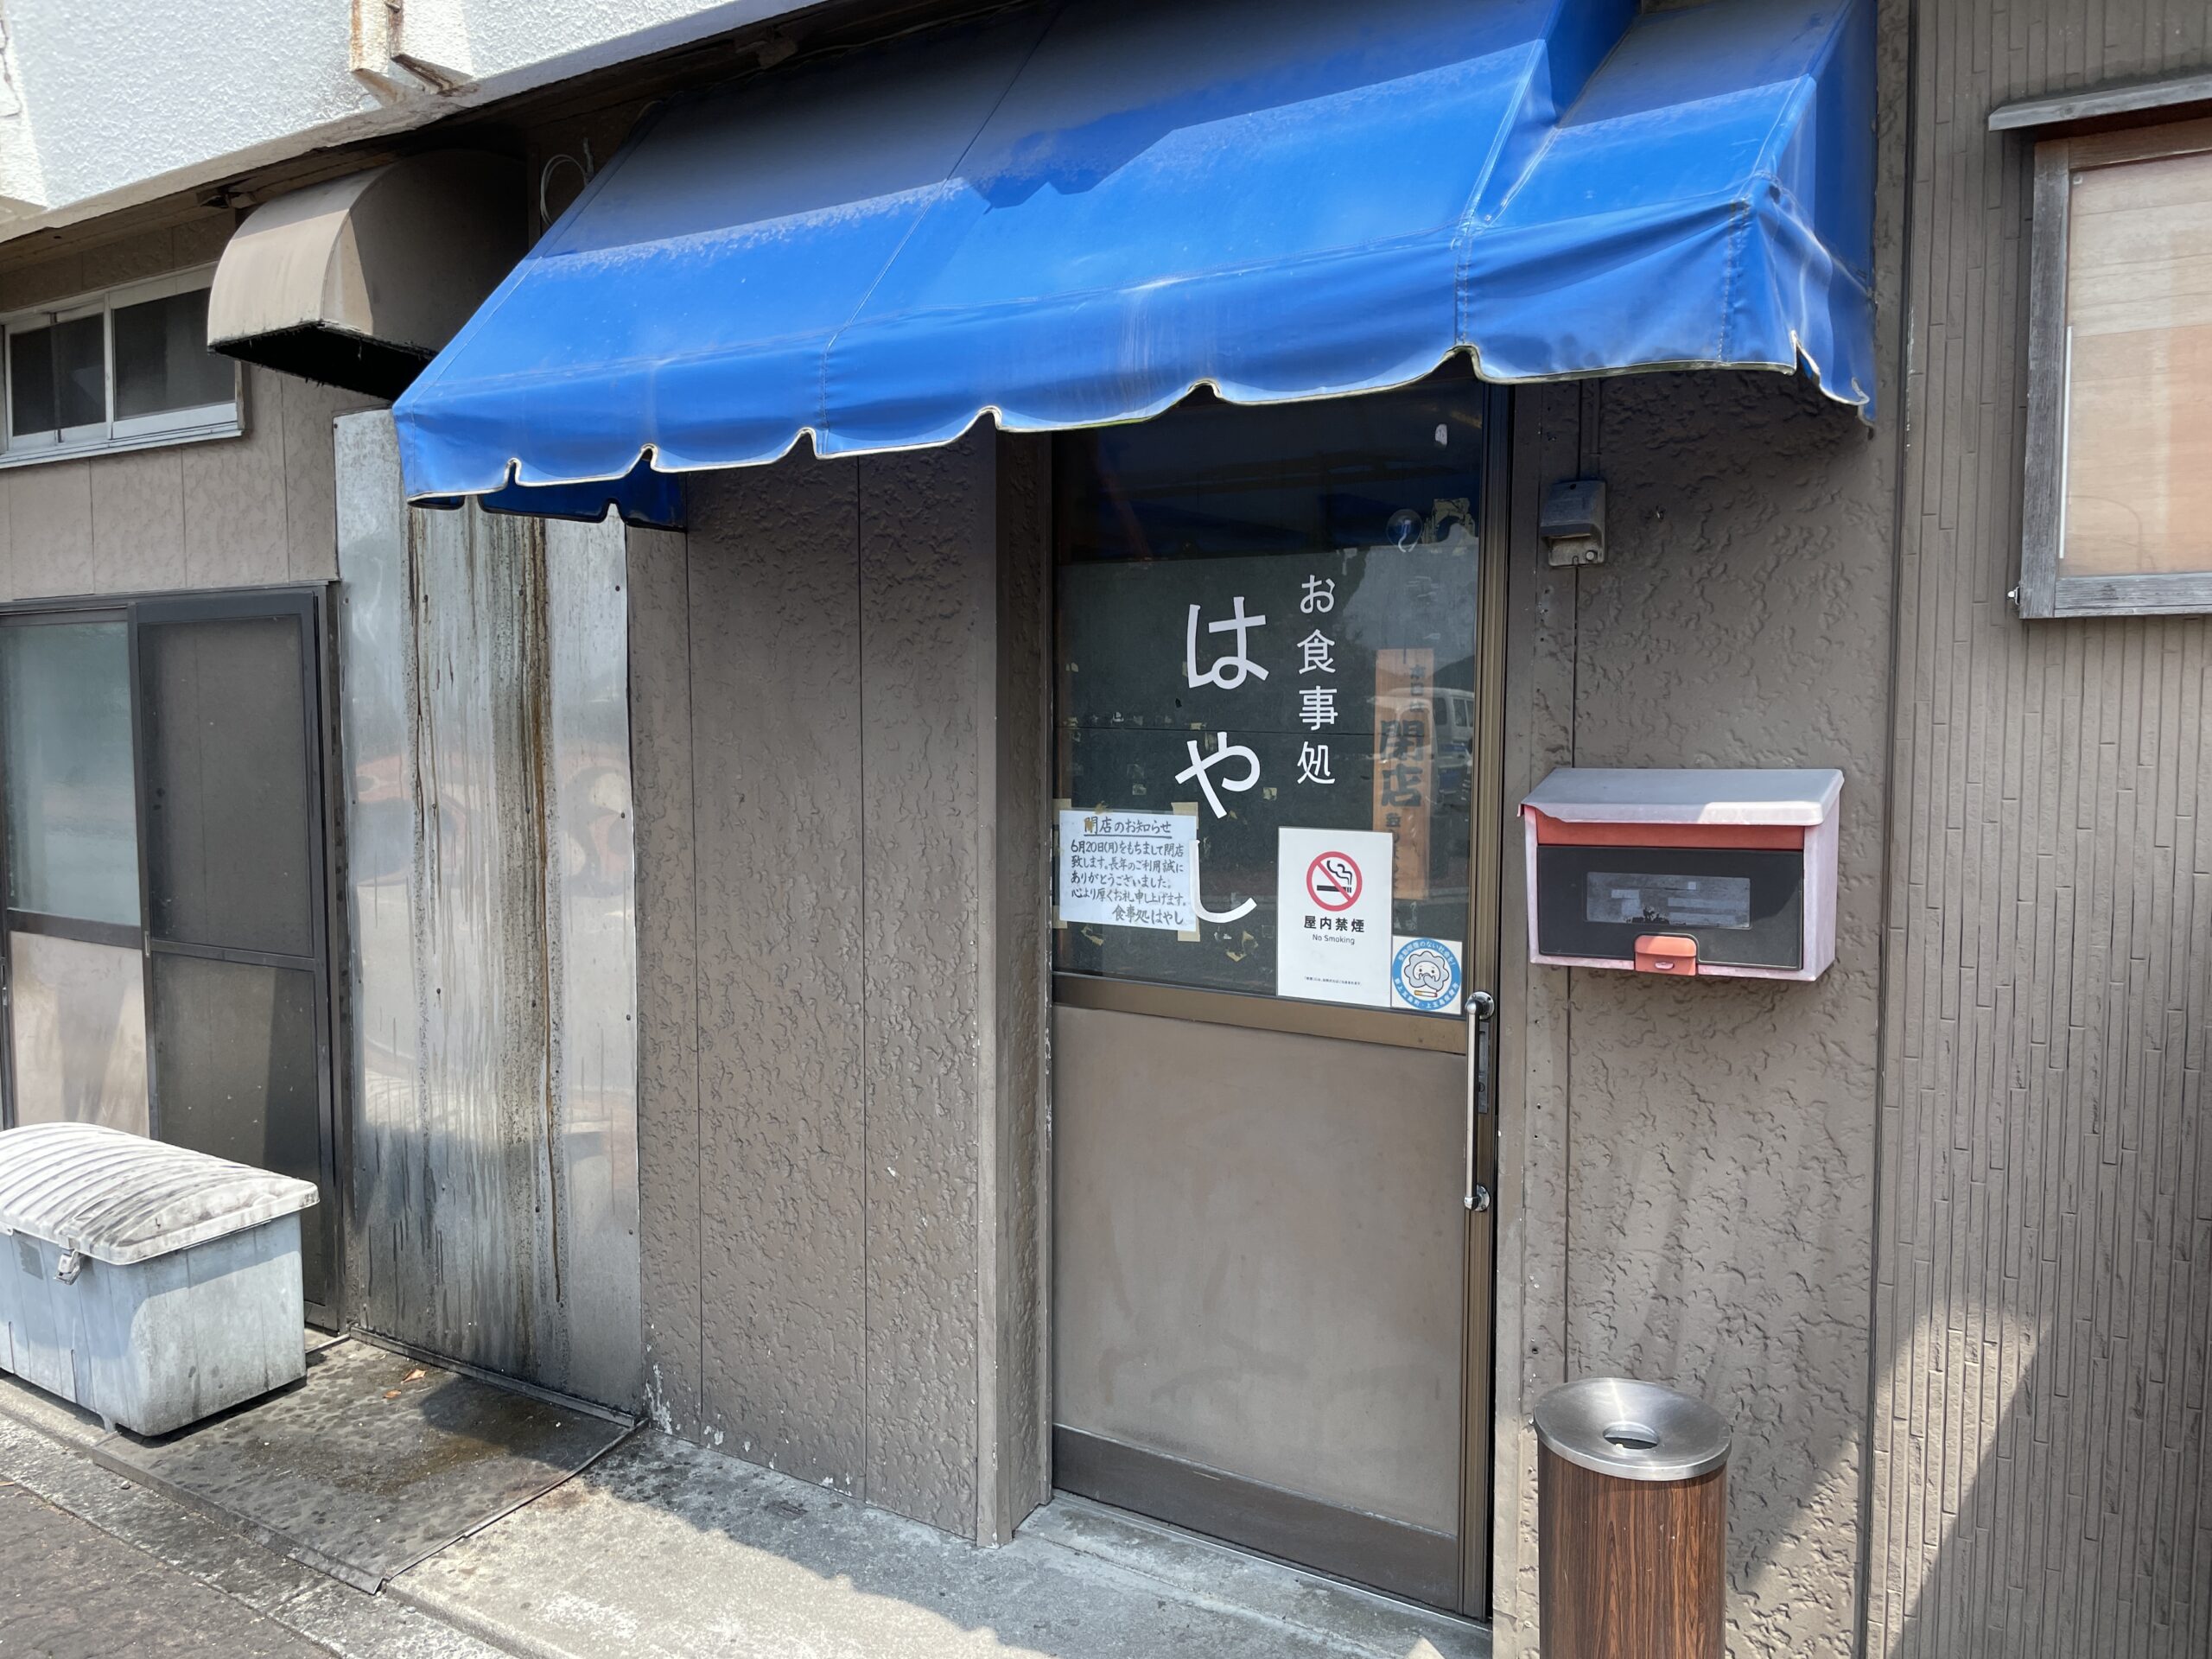 Schliesst nun für immer: Restaurant Hayashi